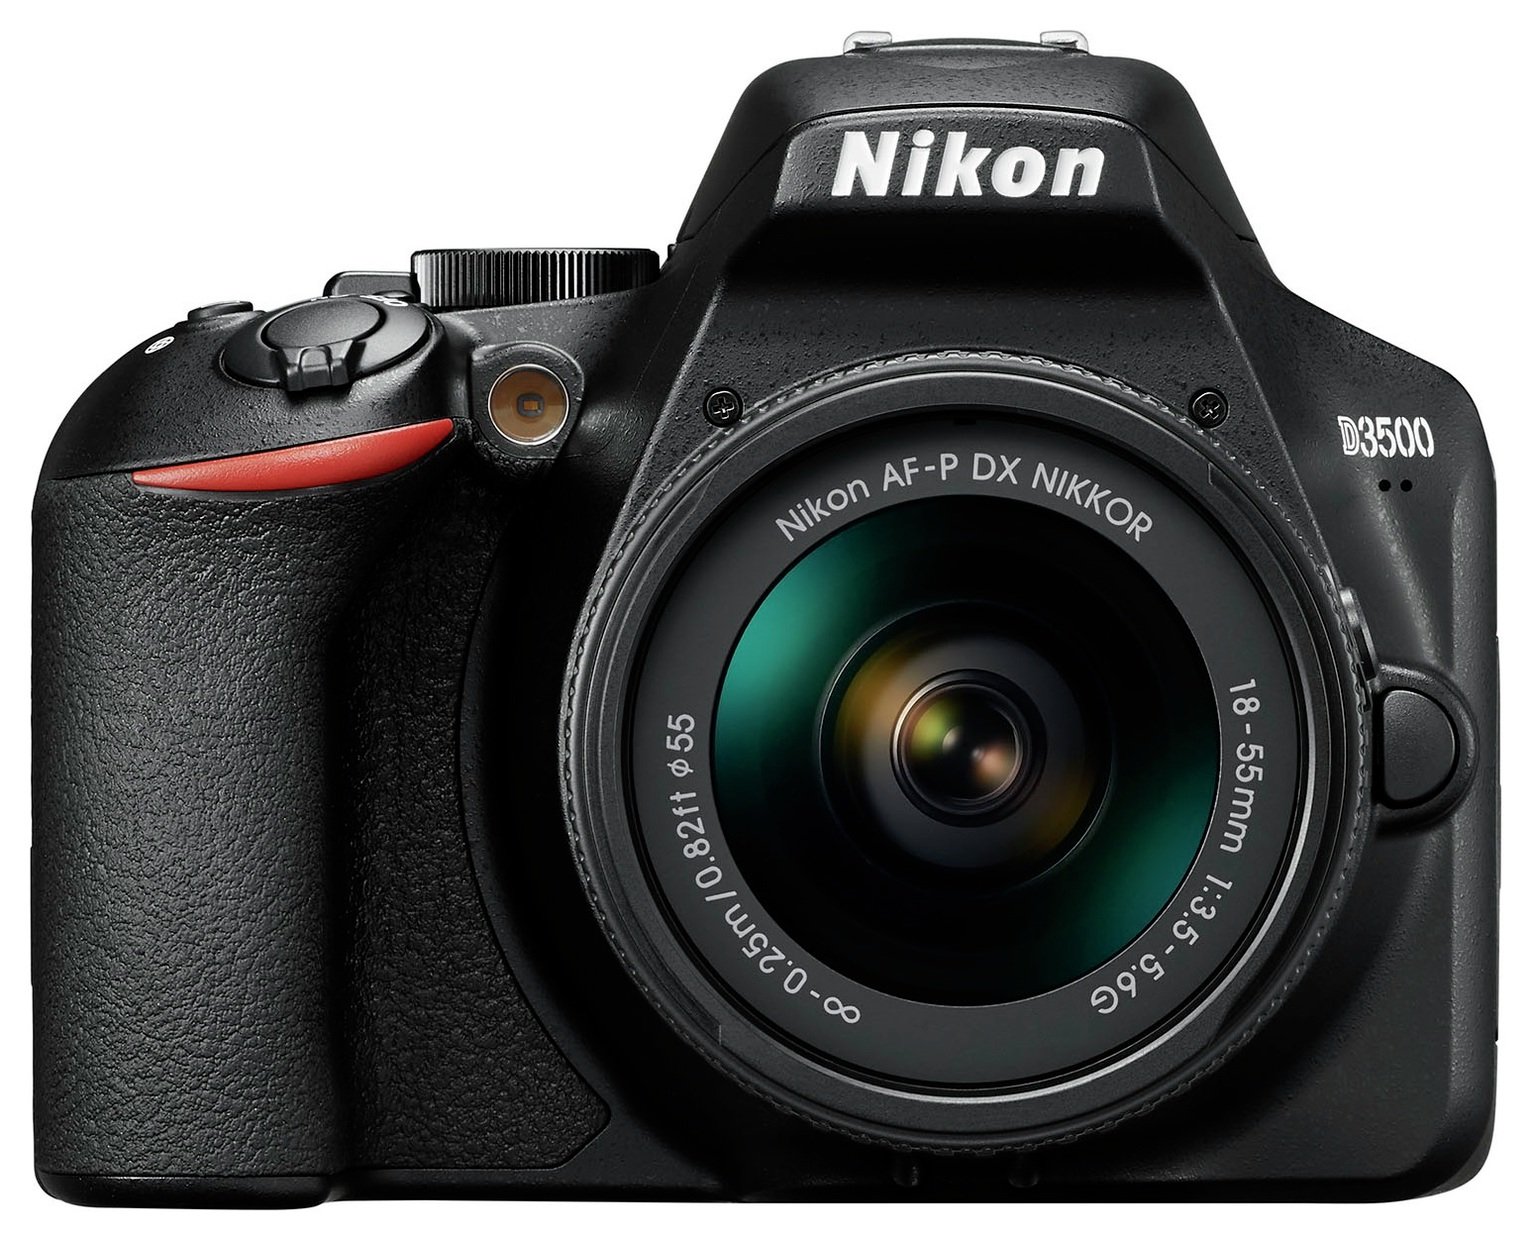 Nikon D3500 DSLR Camera with AFP DX 18-55mm Lens